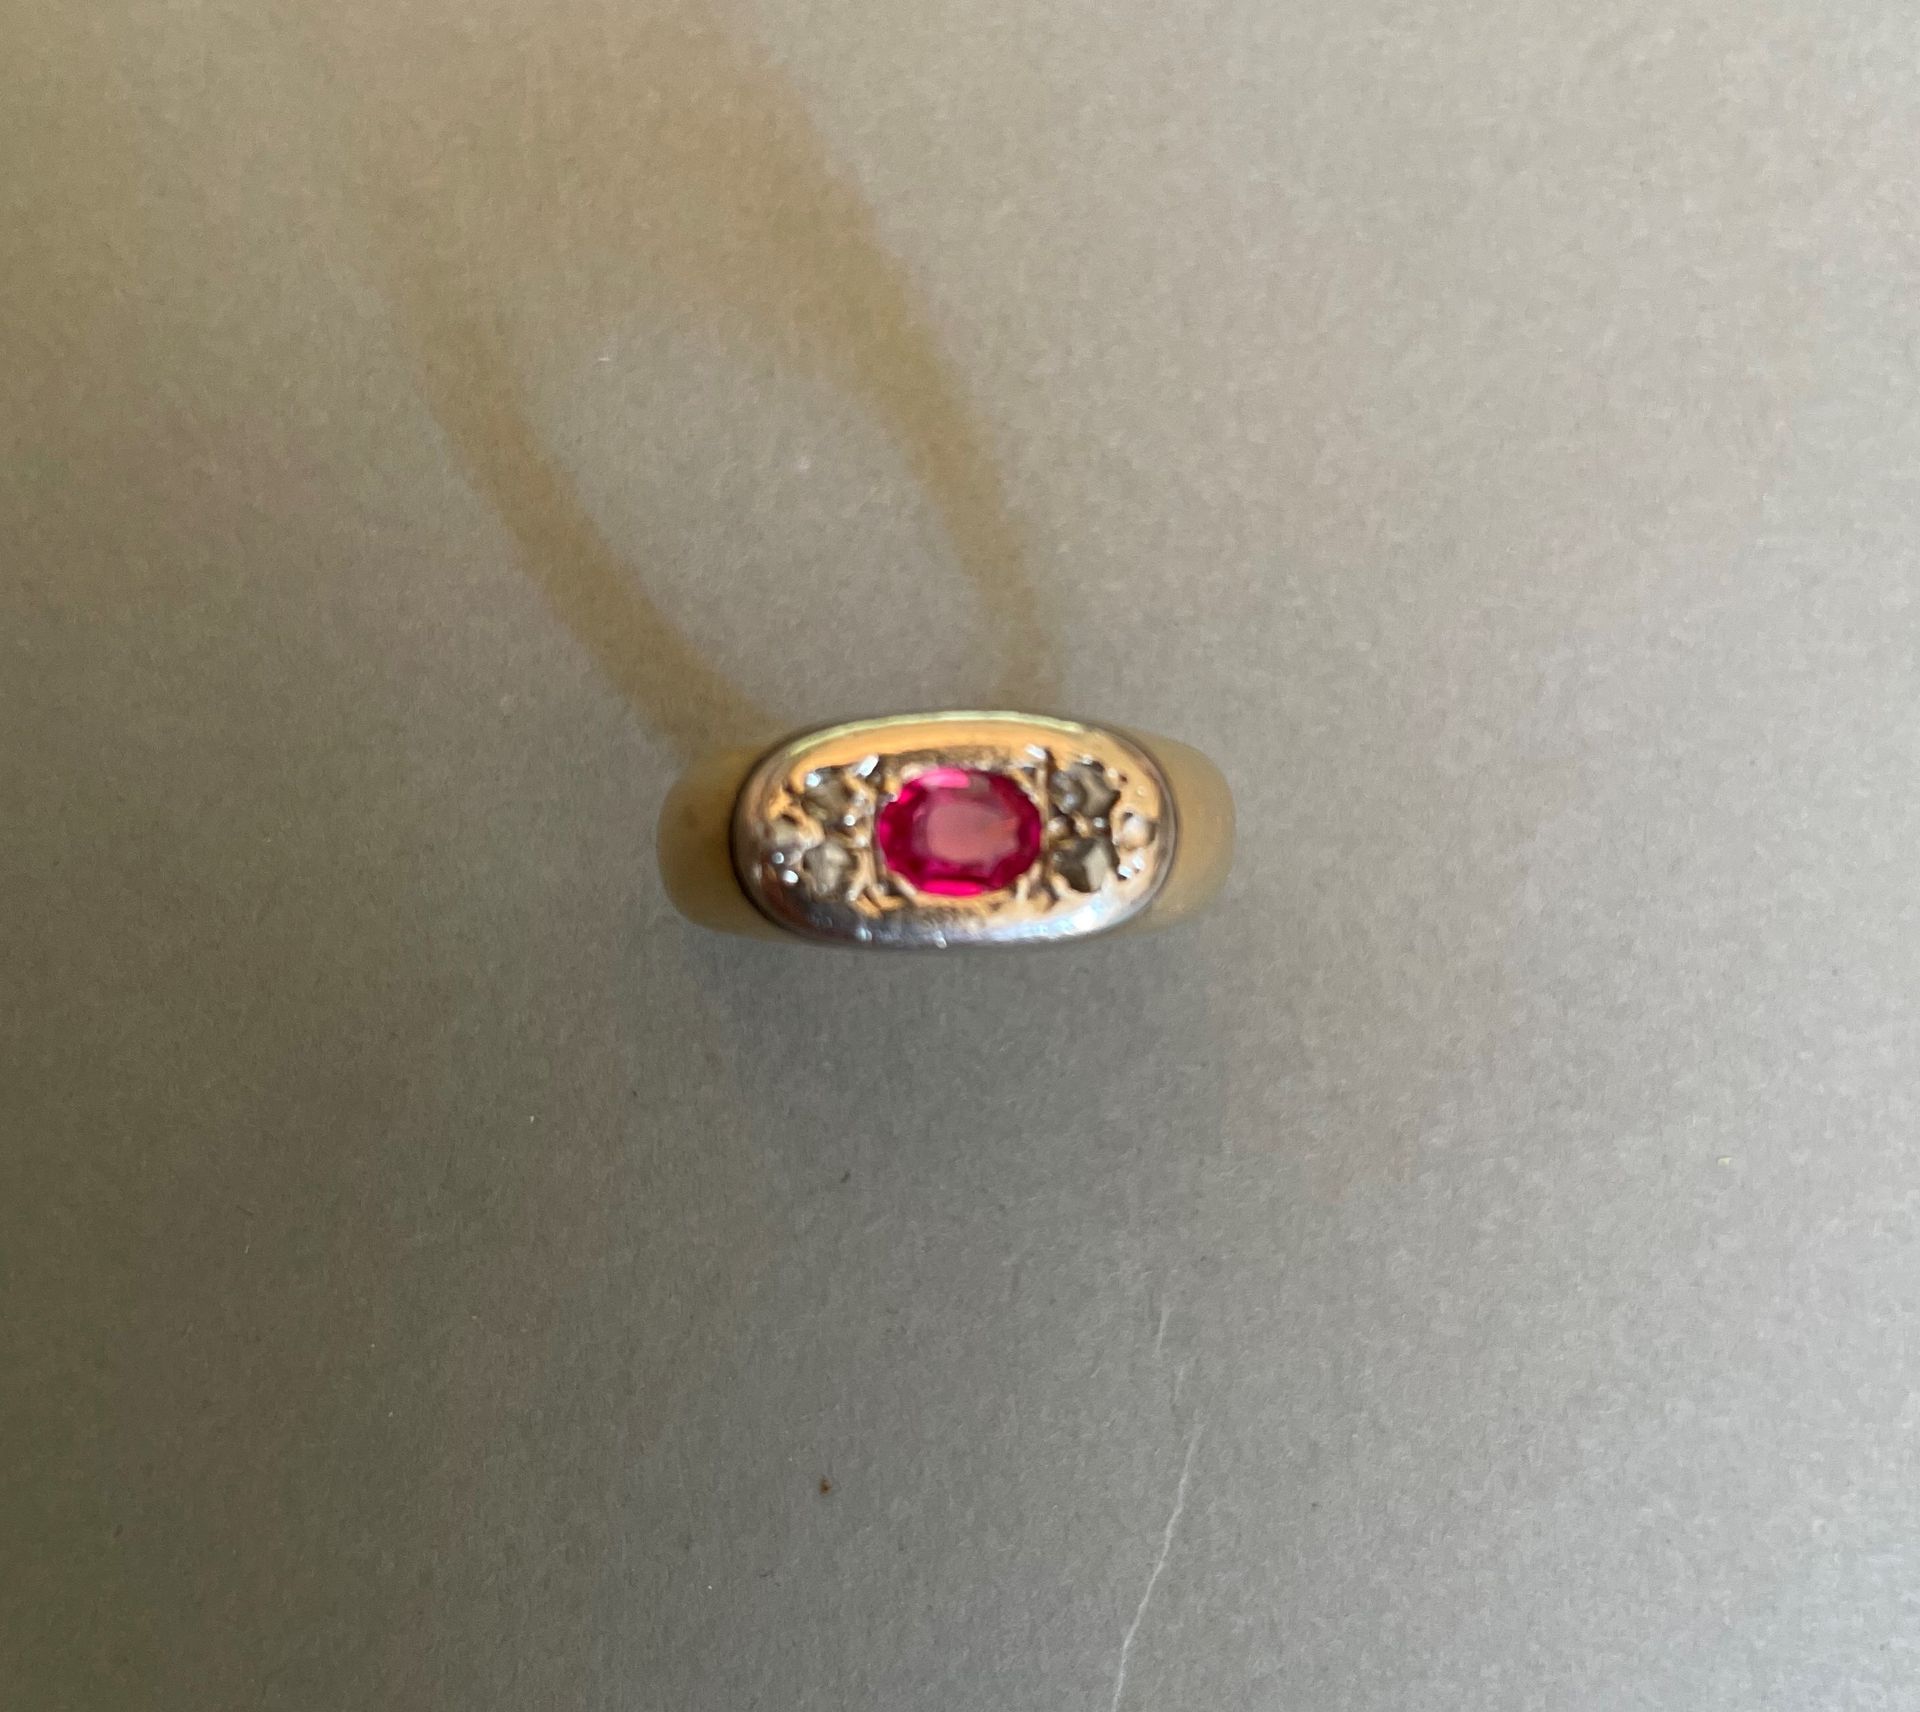 Null 戒指上镶嵌着一颗椭圆形的合成红宝石，中间是两三颗呈三角形排列的玫瑰式切割钻石。

黄金和铂金镶嵌。

重量：9,2克。